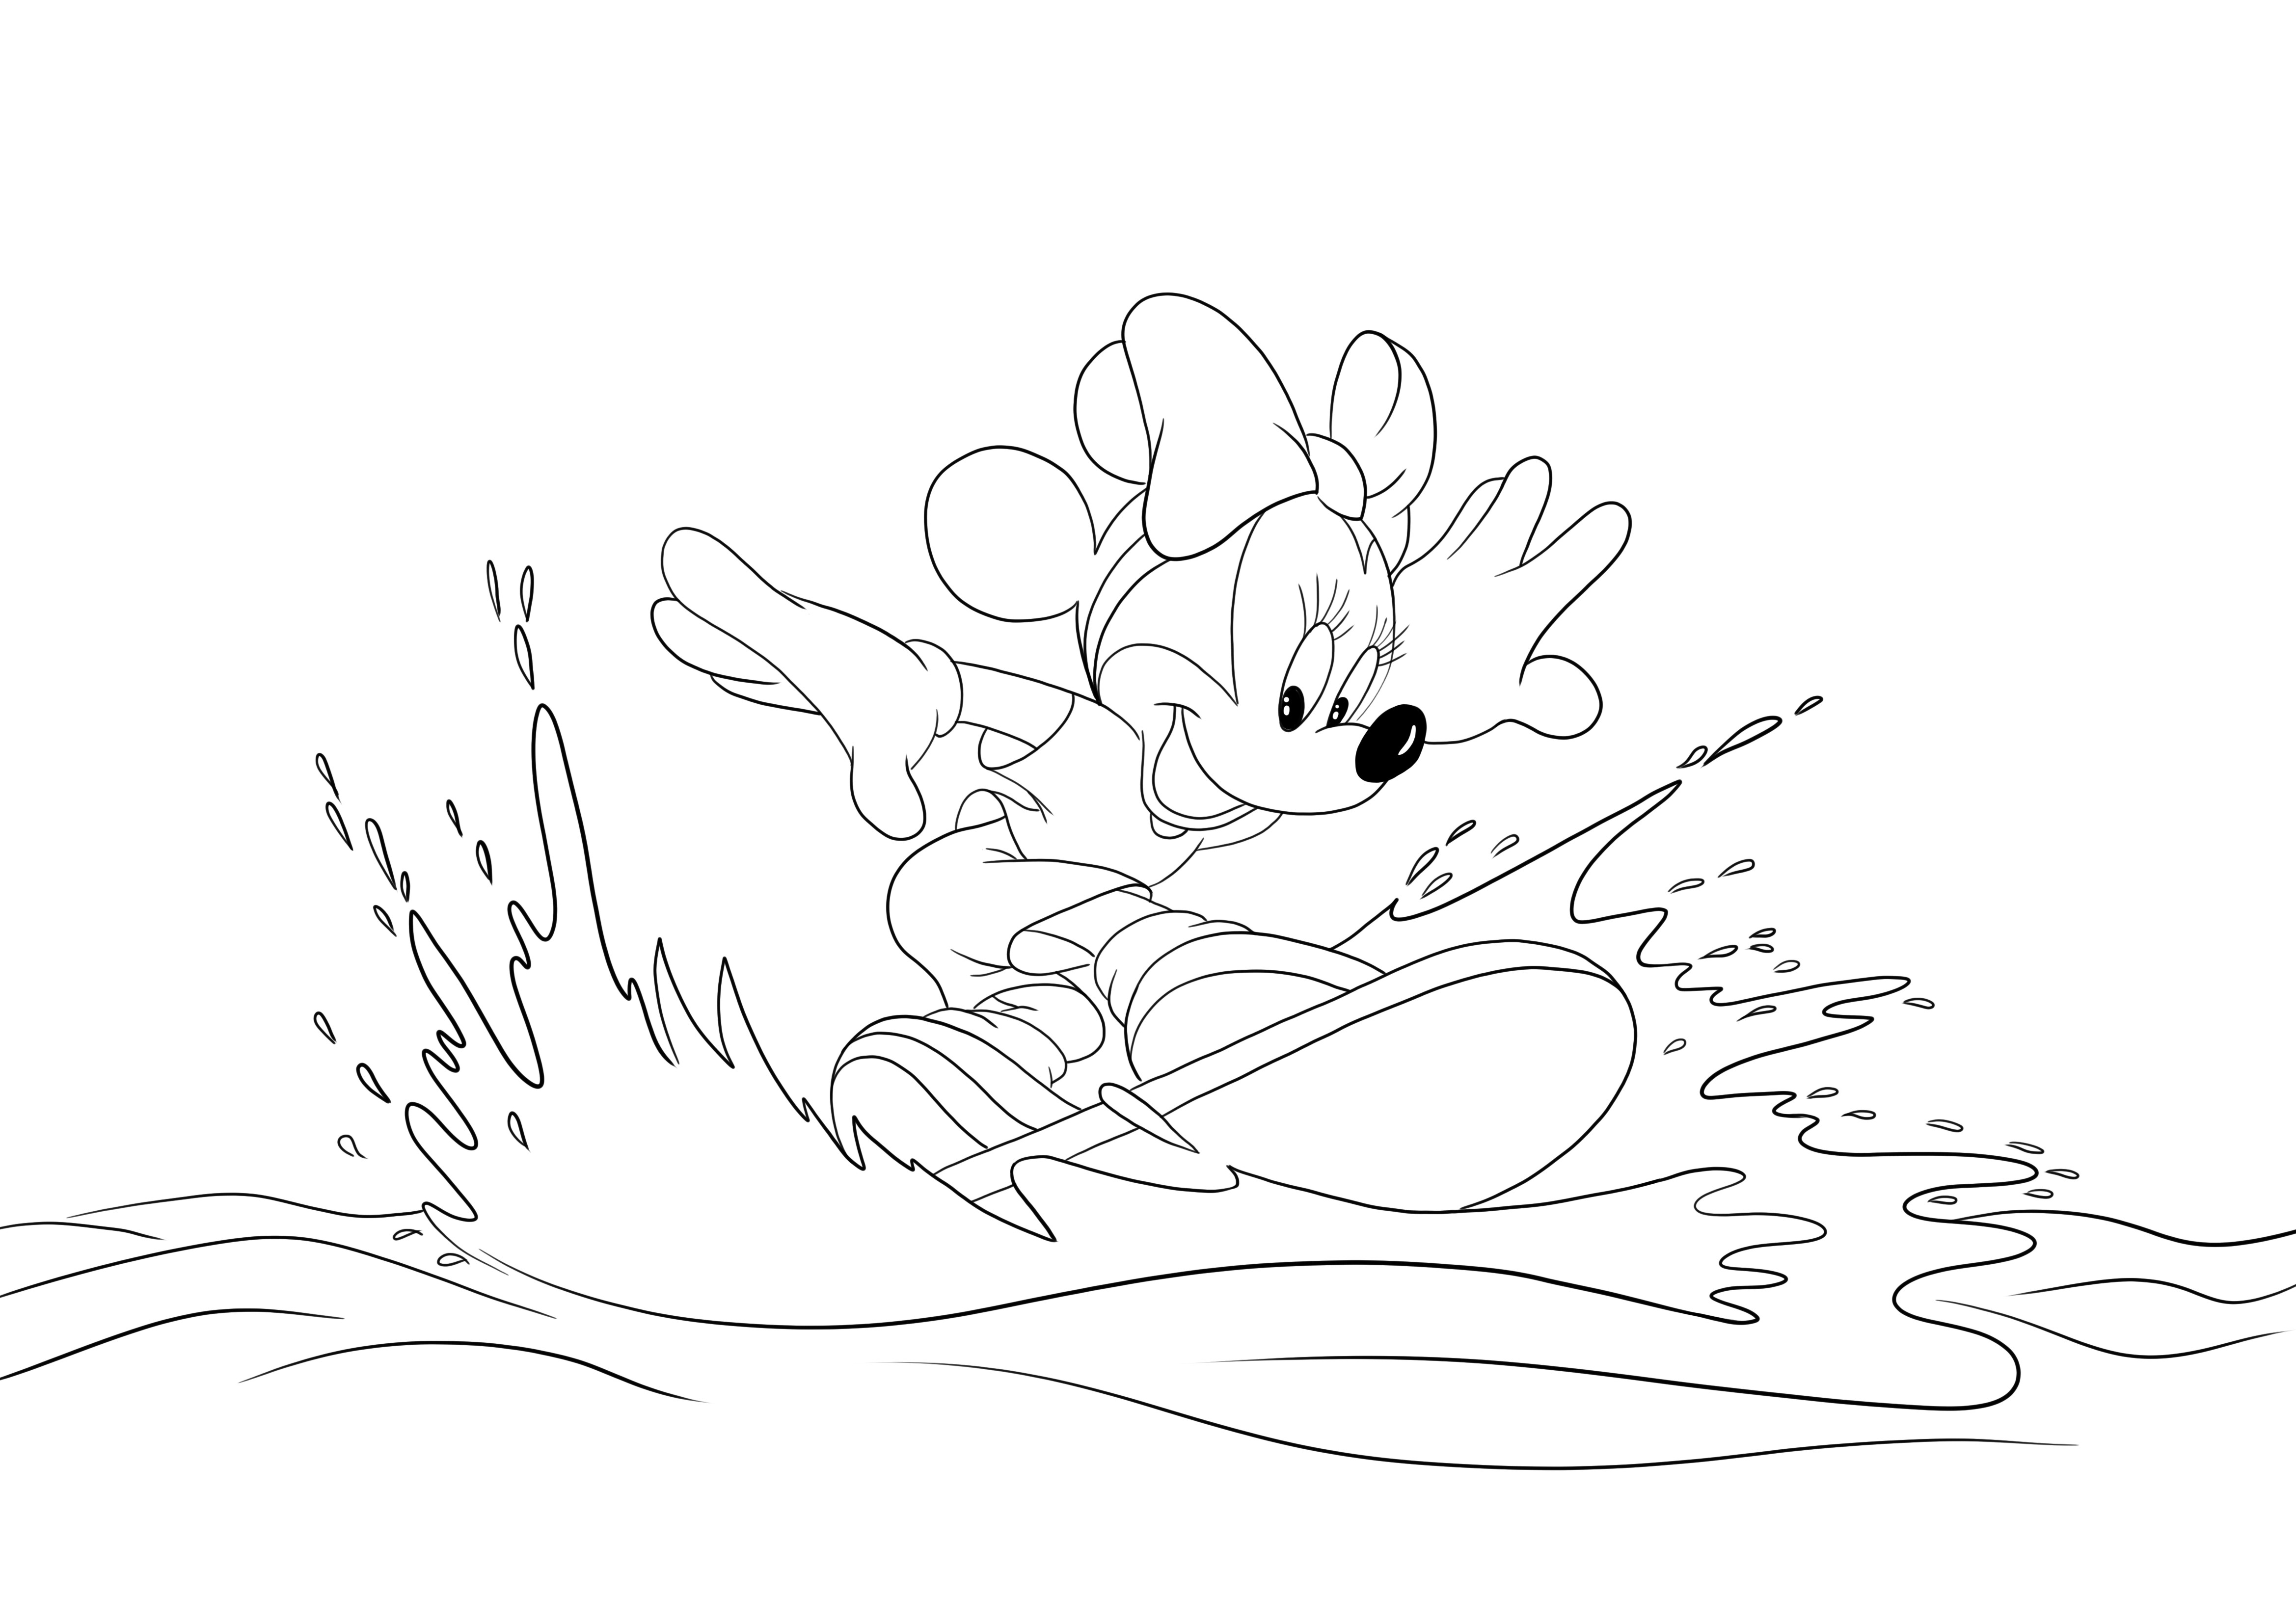 Gambar mewarnai yang bagus dari Minnie berselancar di laut untuk diunduh gratis